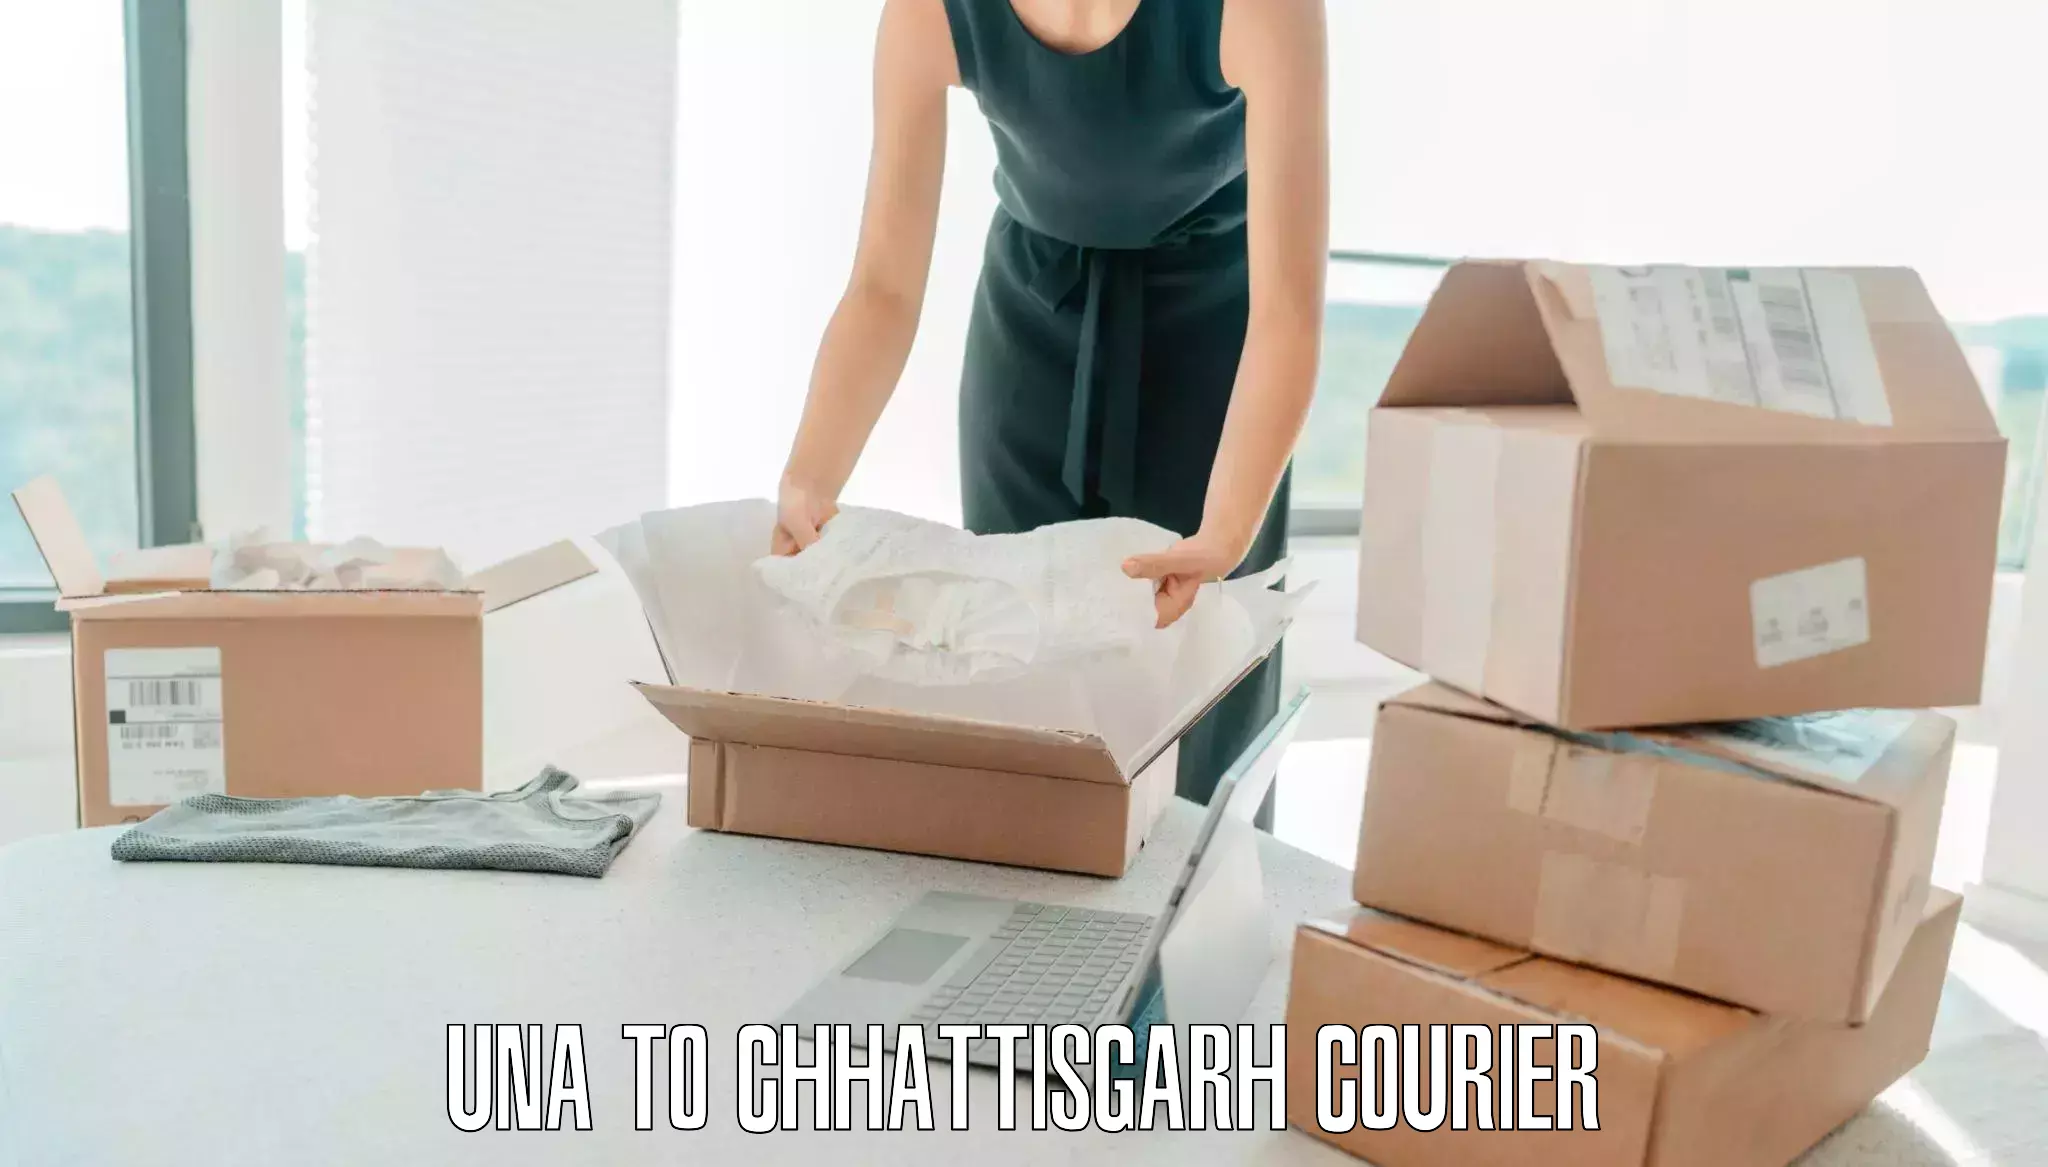 Luggage courier rates calculator Una to Korea Chhattisgarh